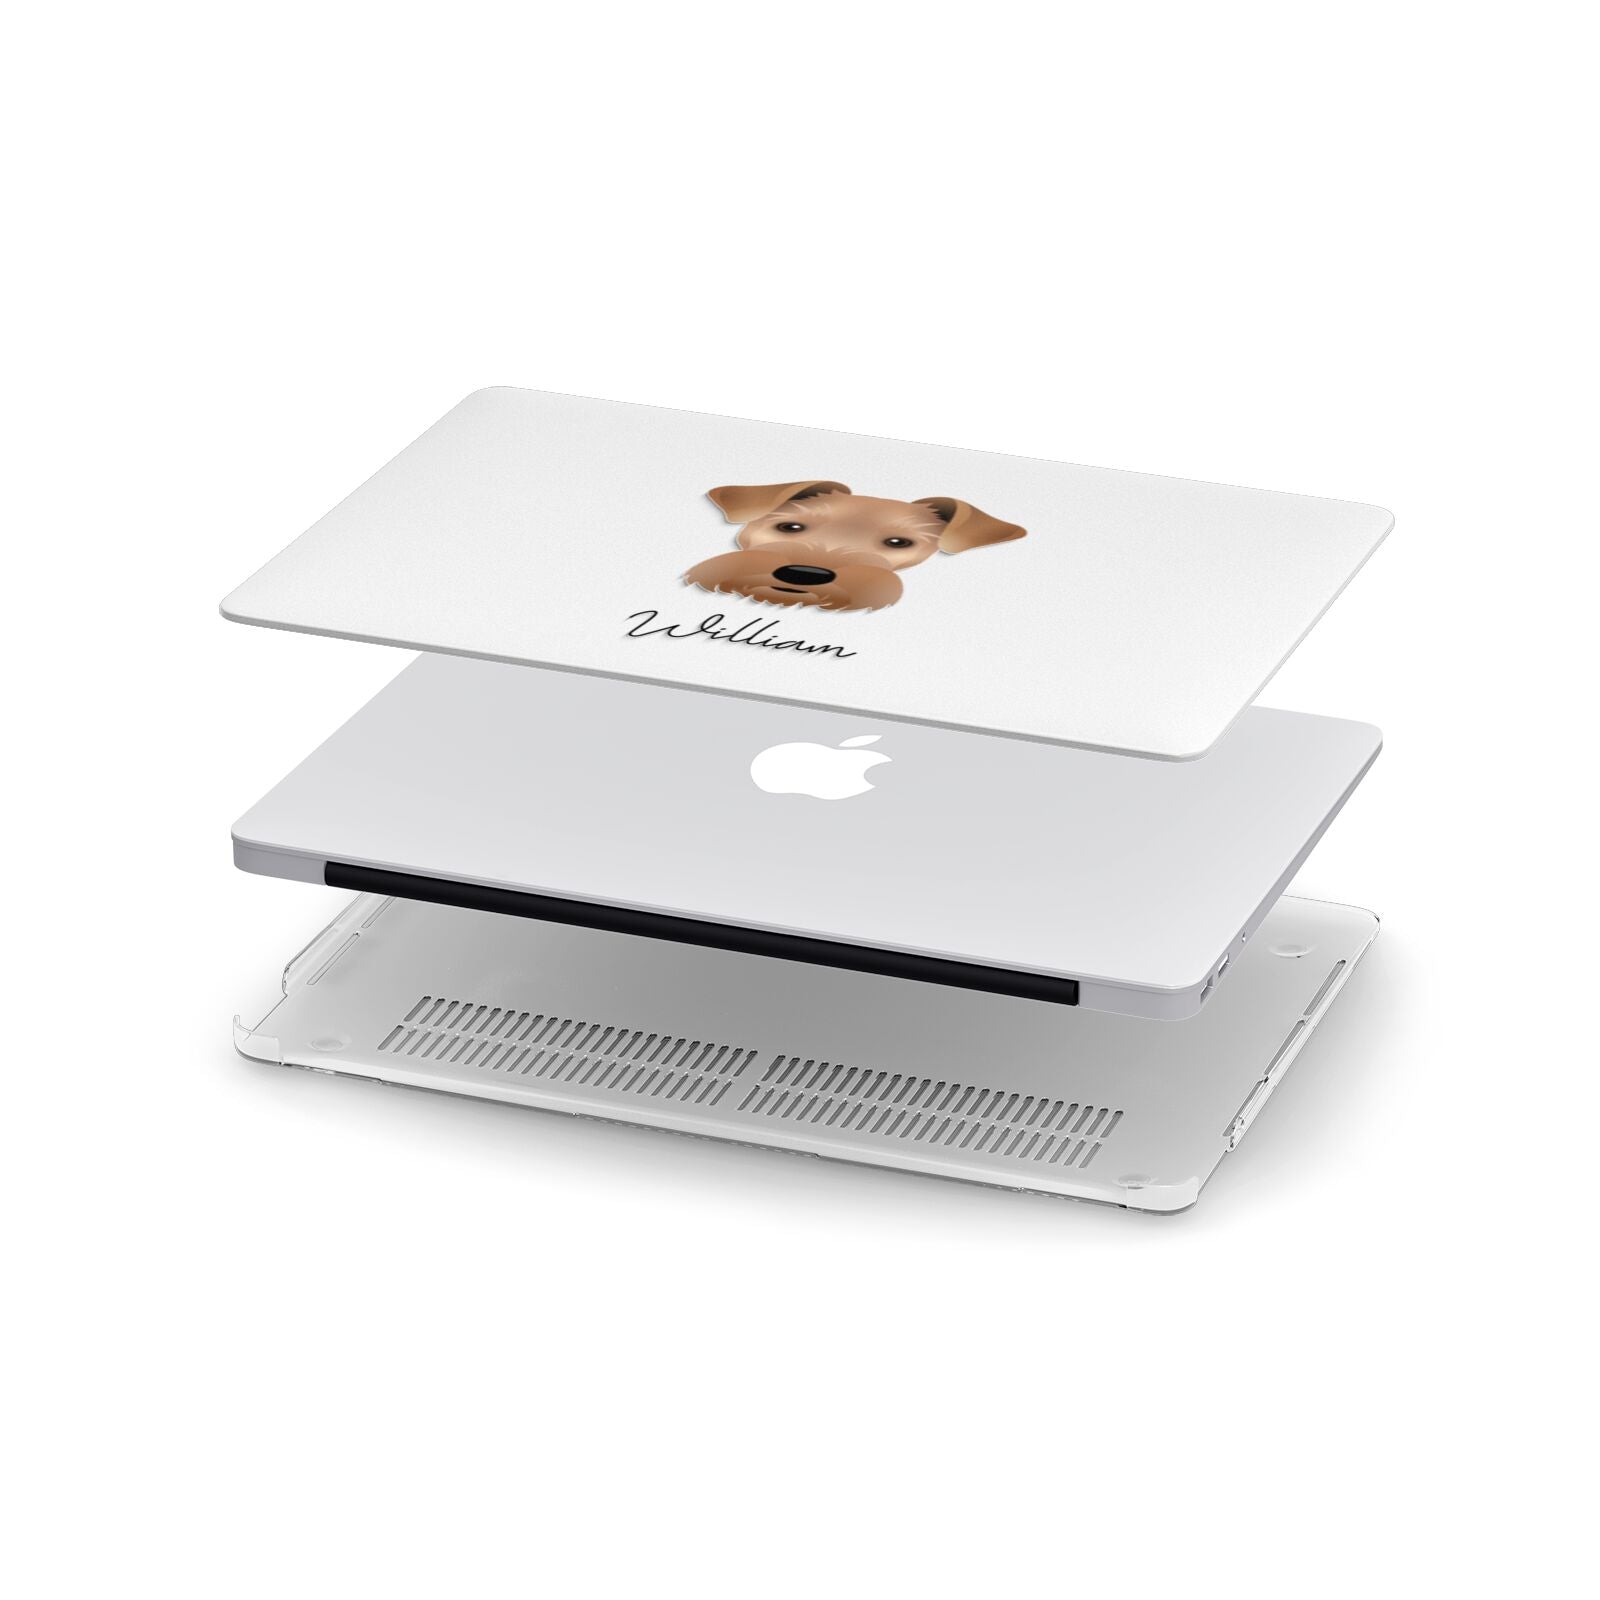 Welsh Terrier Personalised Apple MacBook Case in Detail